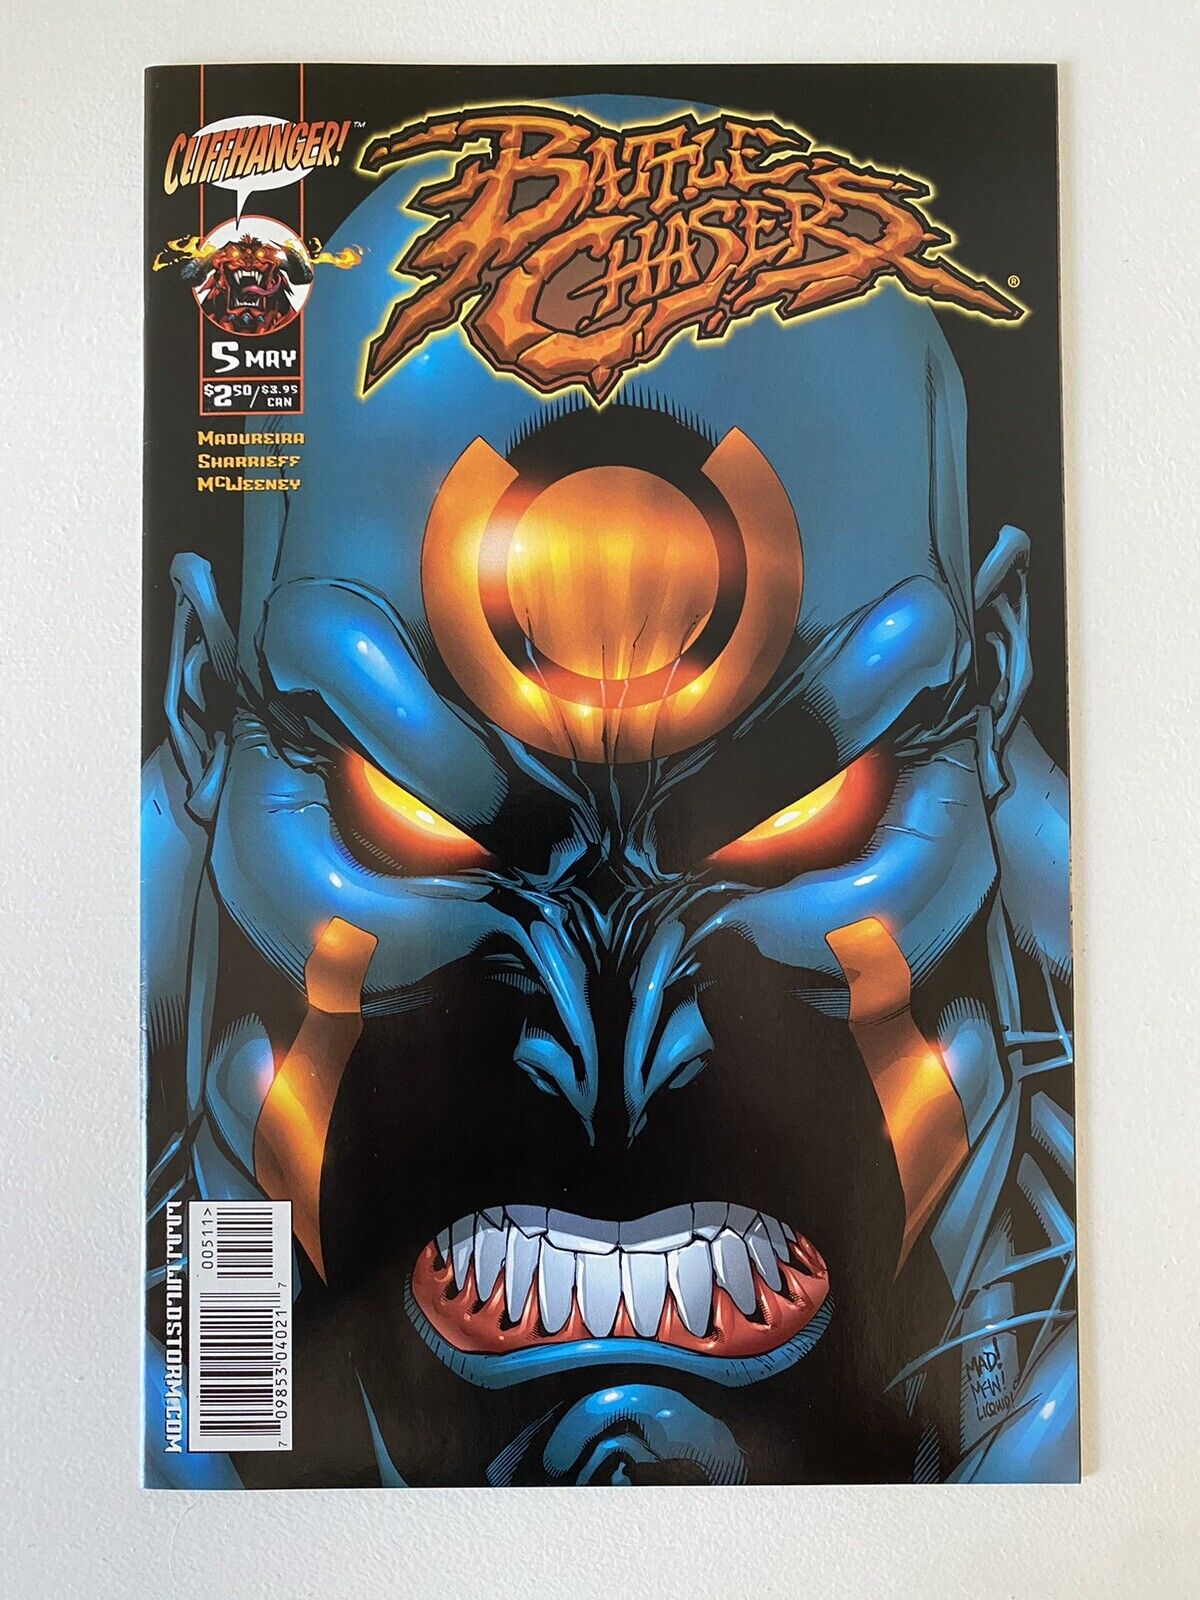 BATTLE CHASERS #5, 1999 Cliffhanger Comics, Joe Madureira Cover